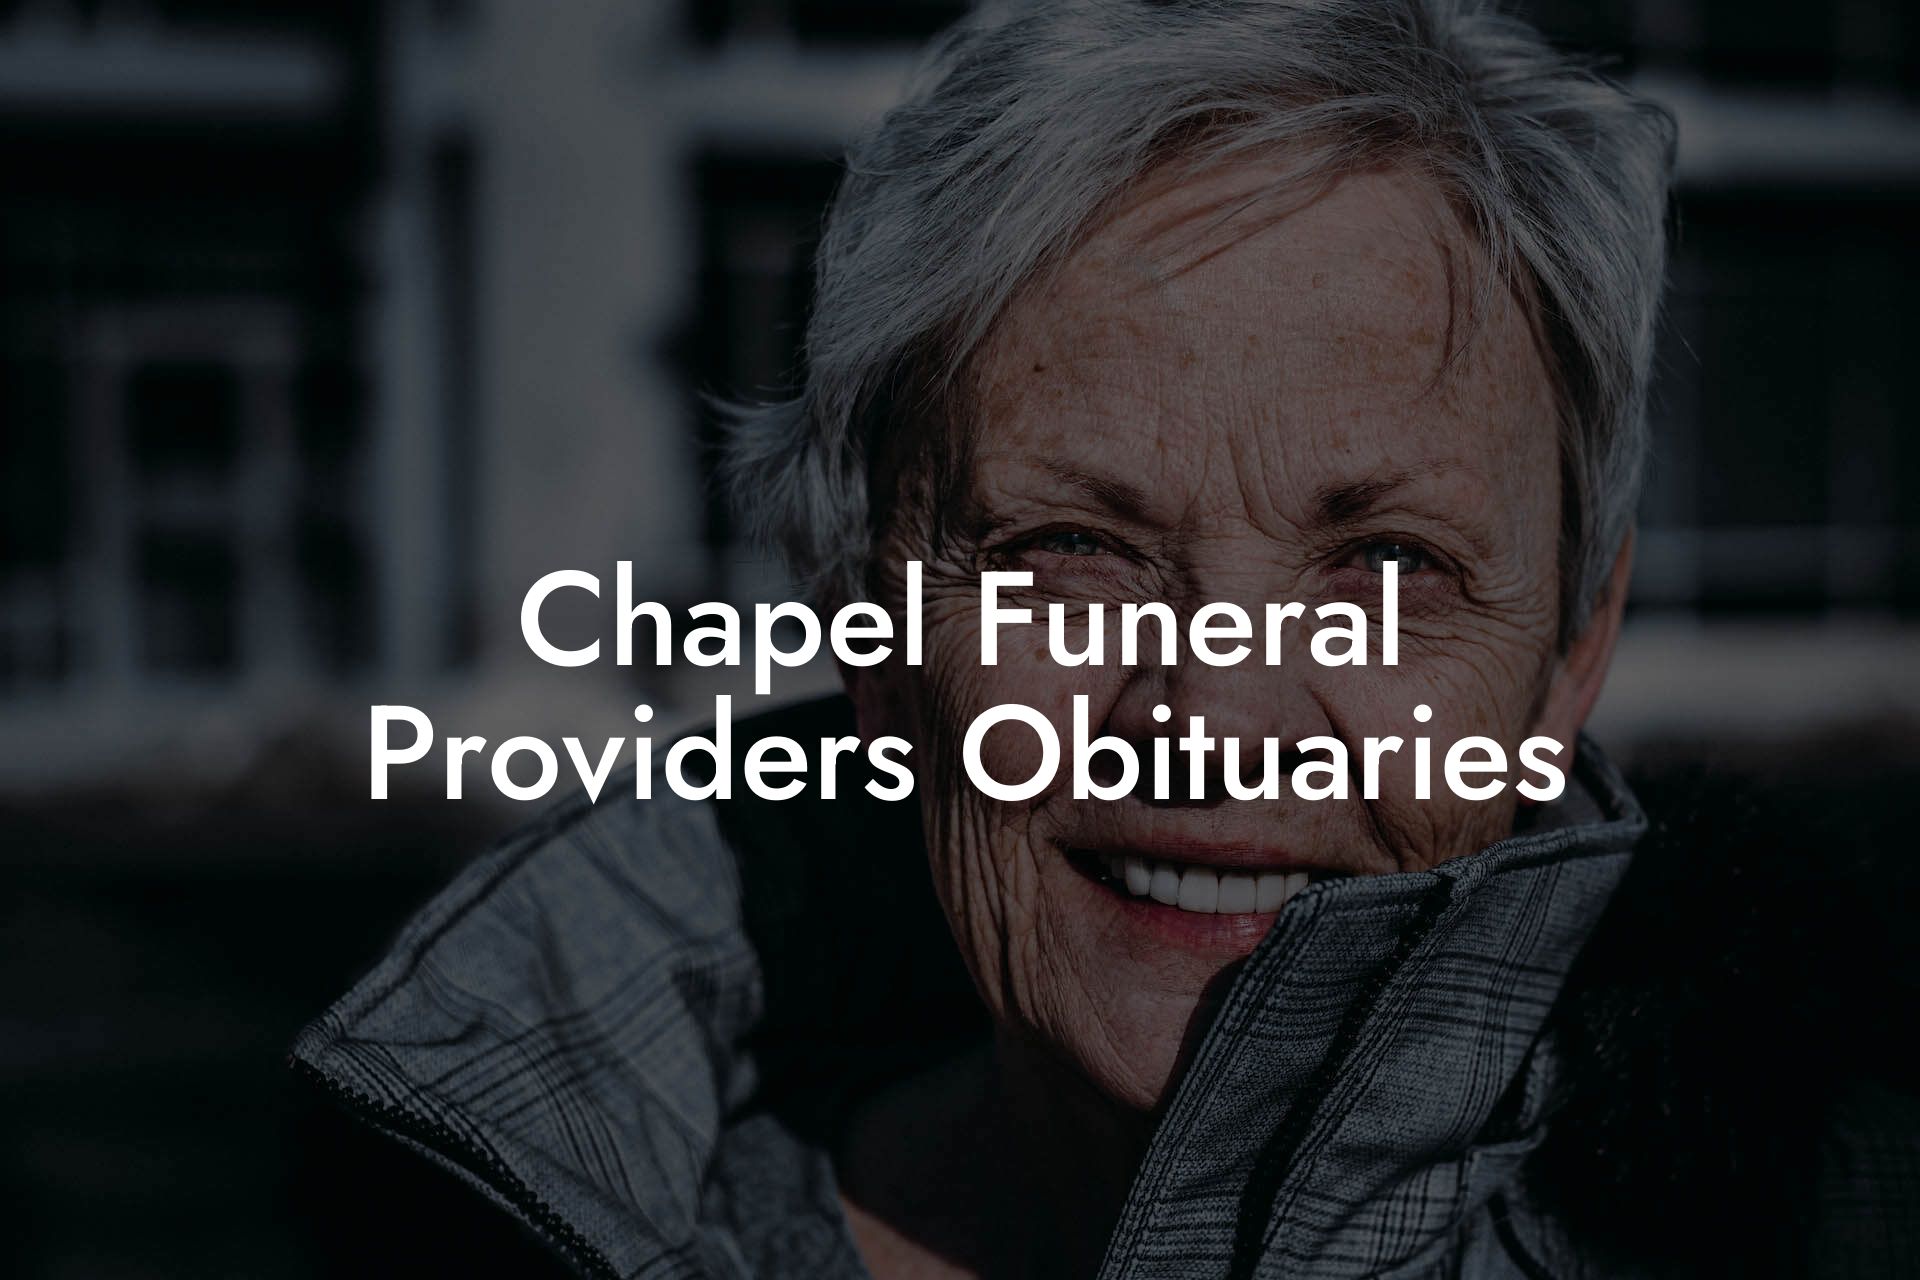 Chapel Funeral Providers Obituaries